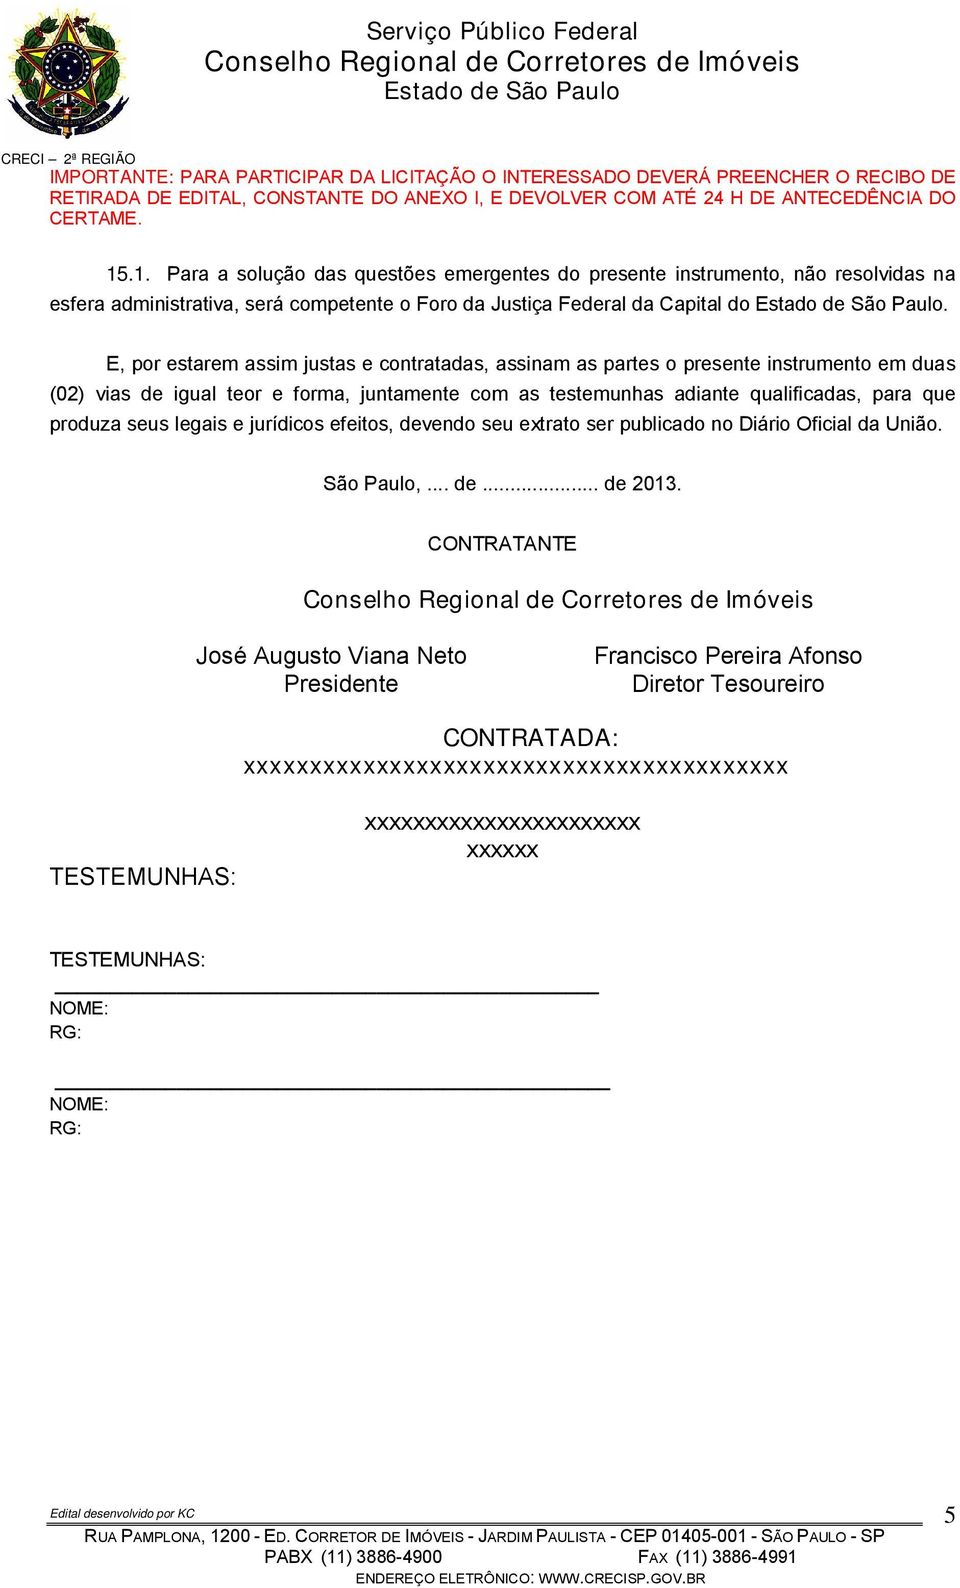 para que produza seus legais e jurídicos efeitos, devendo seu extrato ser publicado no Diário Oficial da União. São Paulo,... de... de 2013.